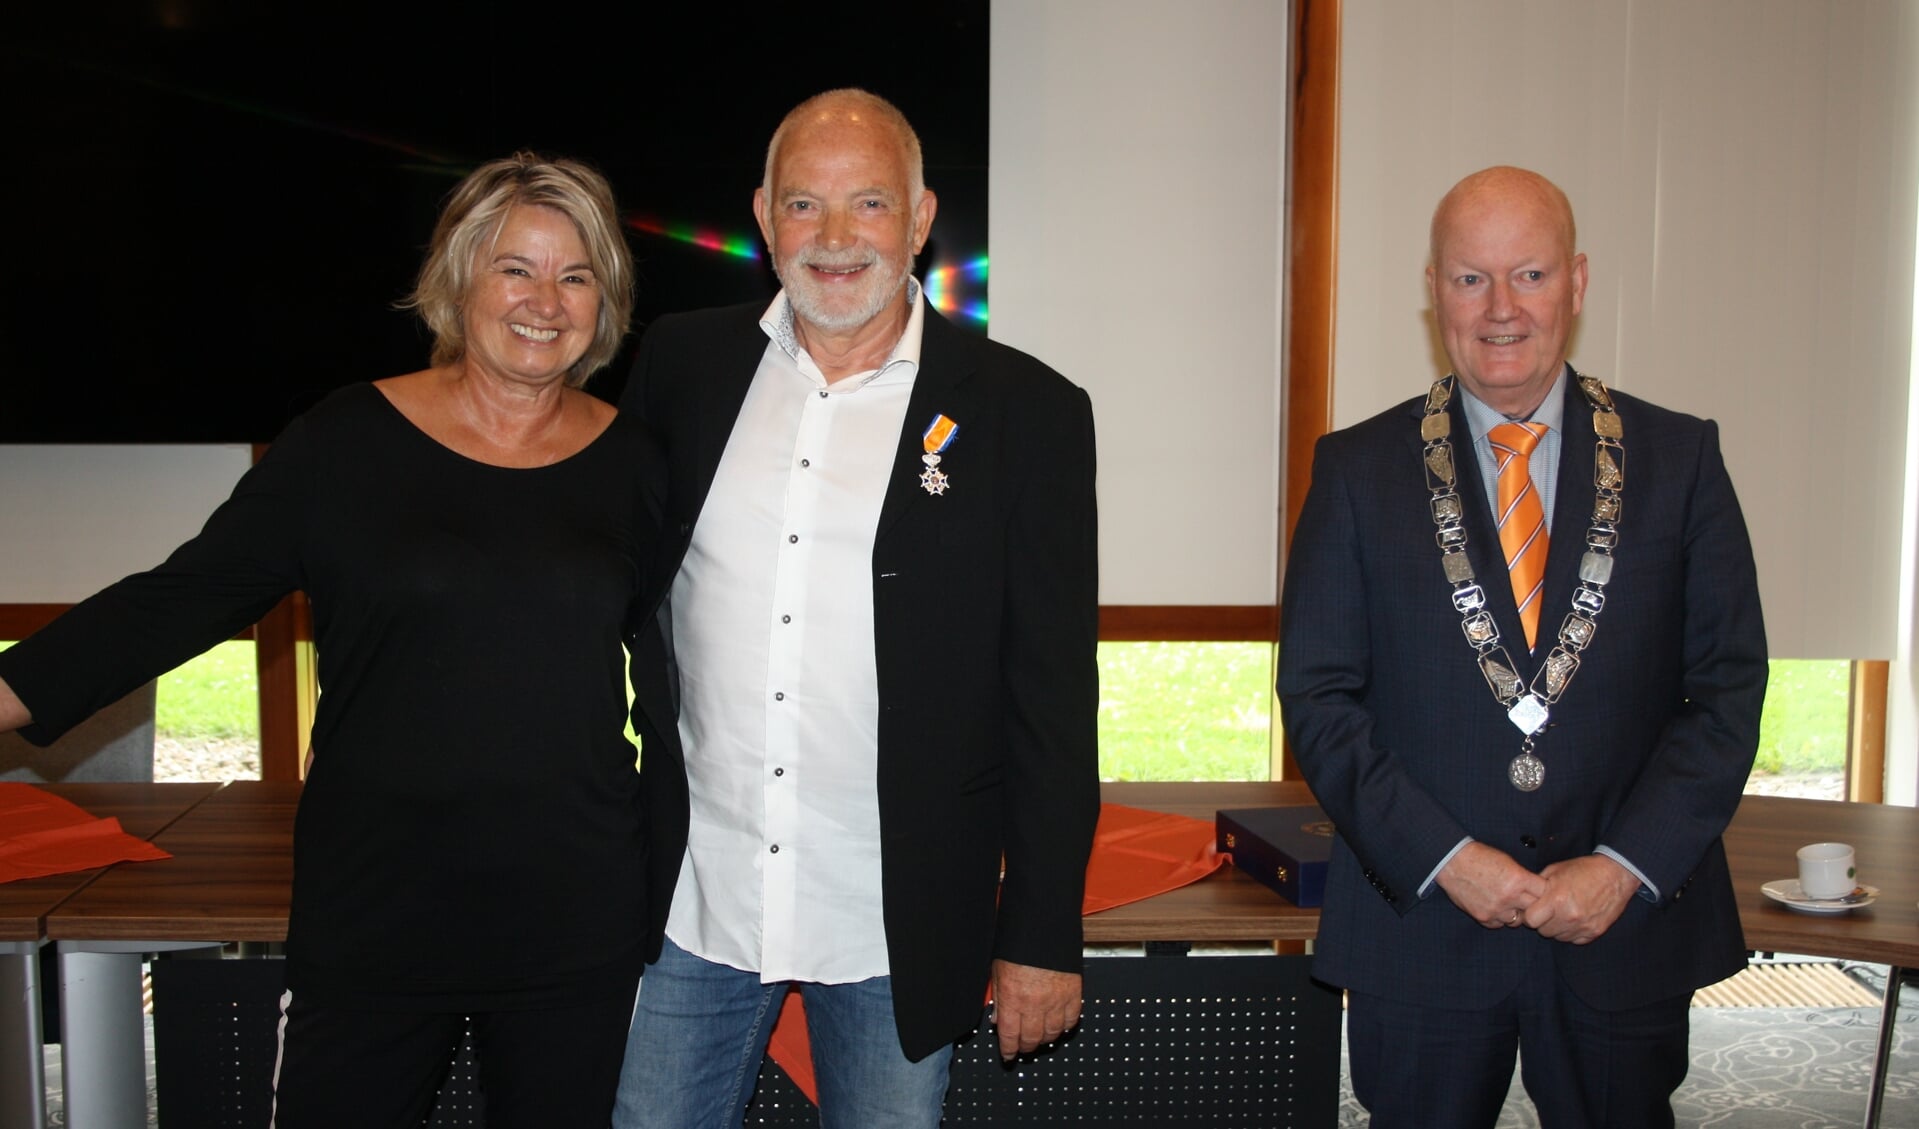 Wijbe met zijn vrouw Stanneke en Ruud van Bennekom op de foto.